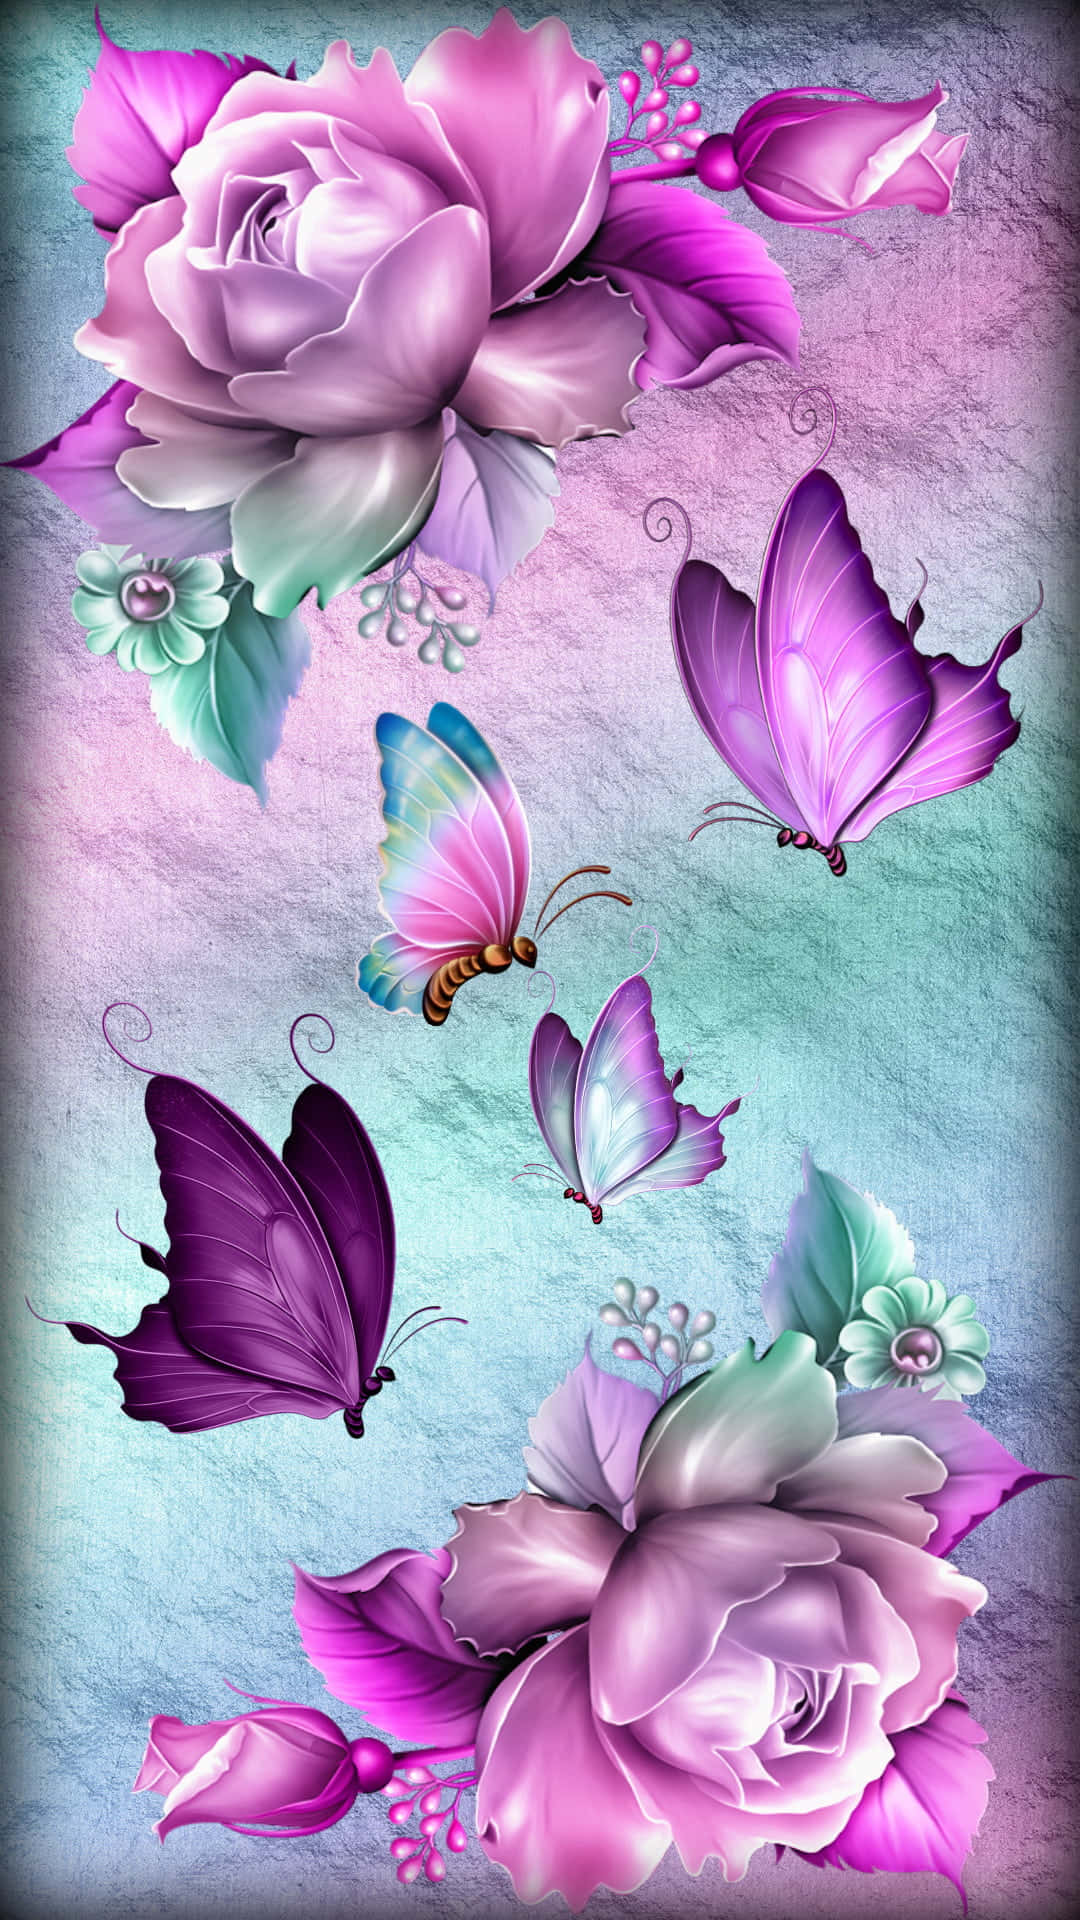 Unaflor De Color Rosa Y Morado Con Mariposas Encima